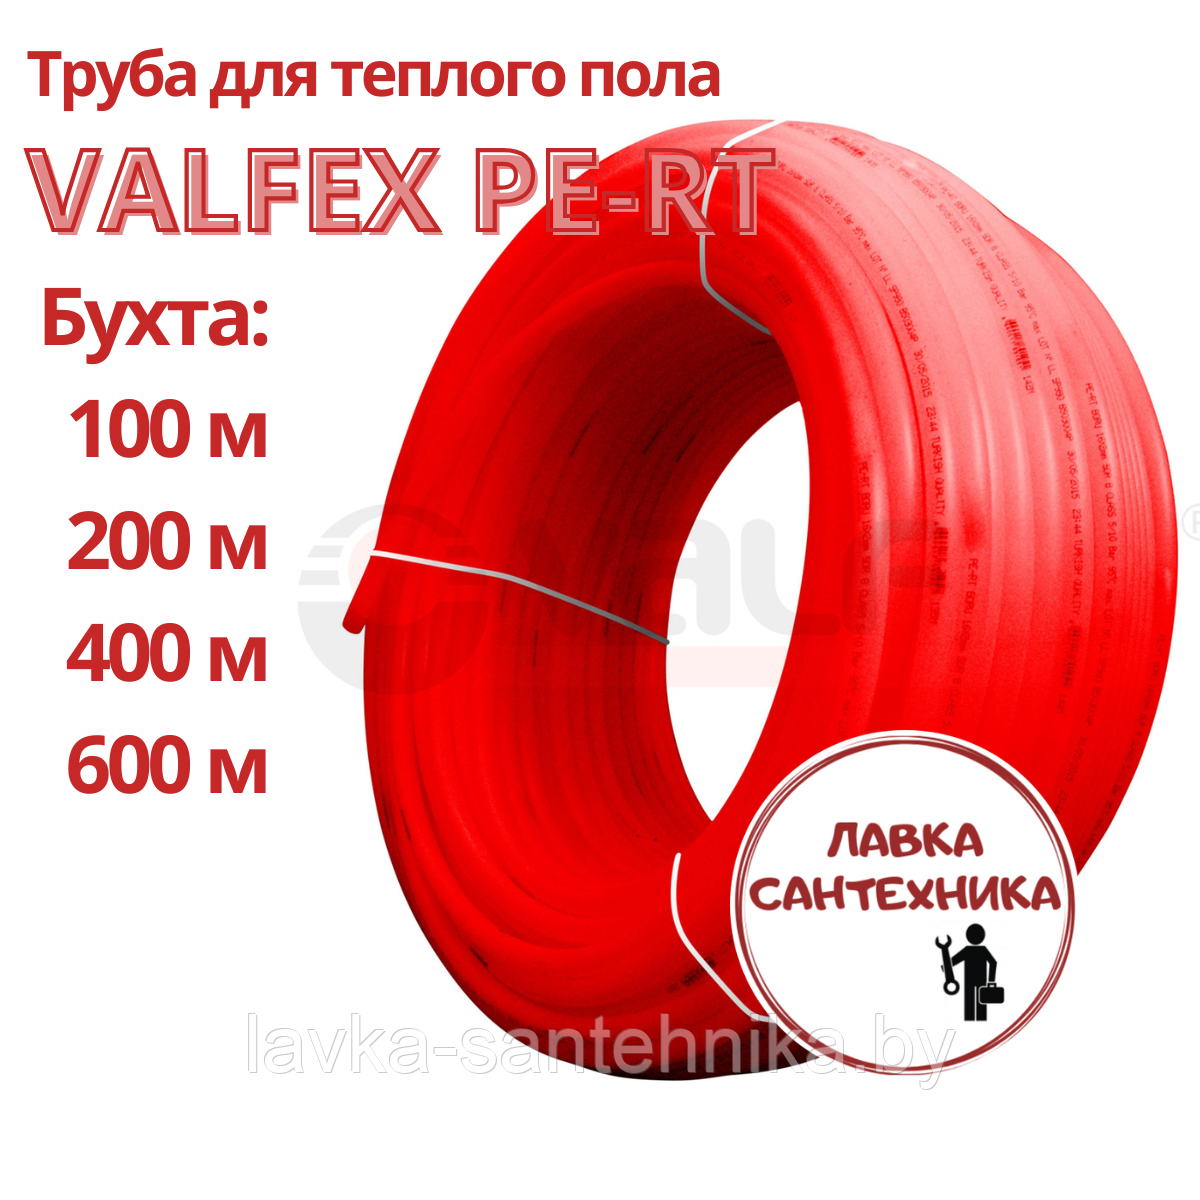 Труба VALFEX PE-RT 16x2,0 мм для теплого пола (длина бухты: 200 м)